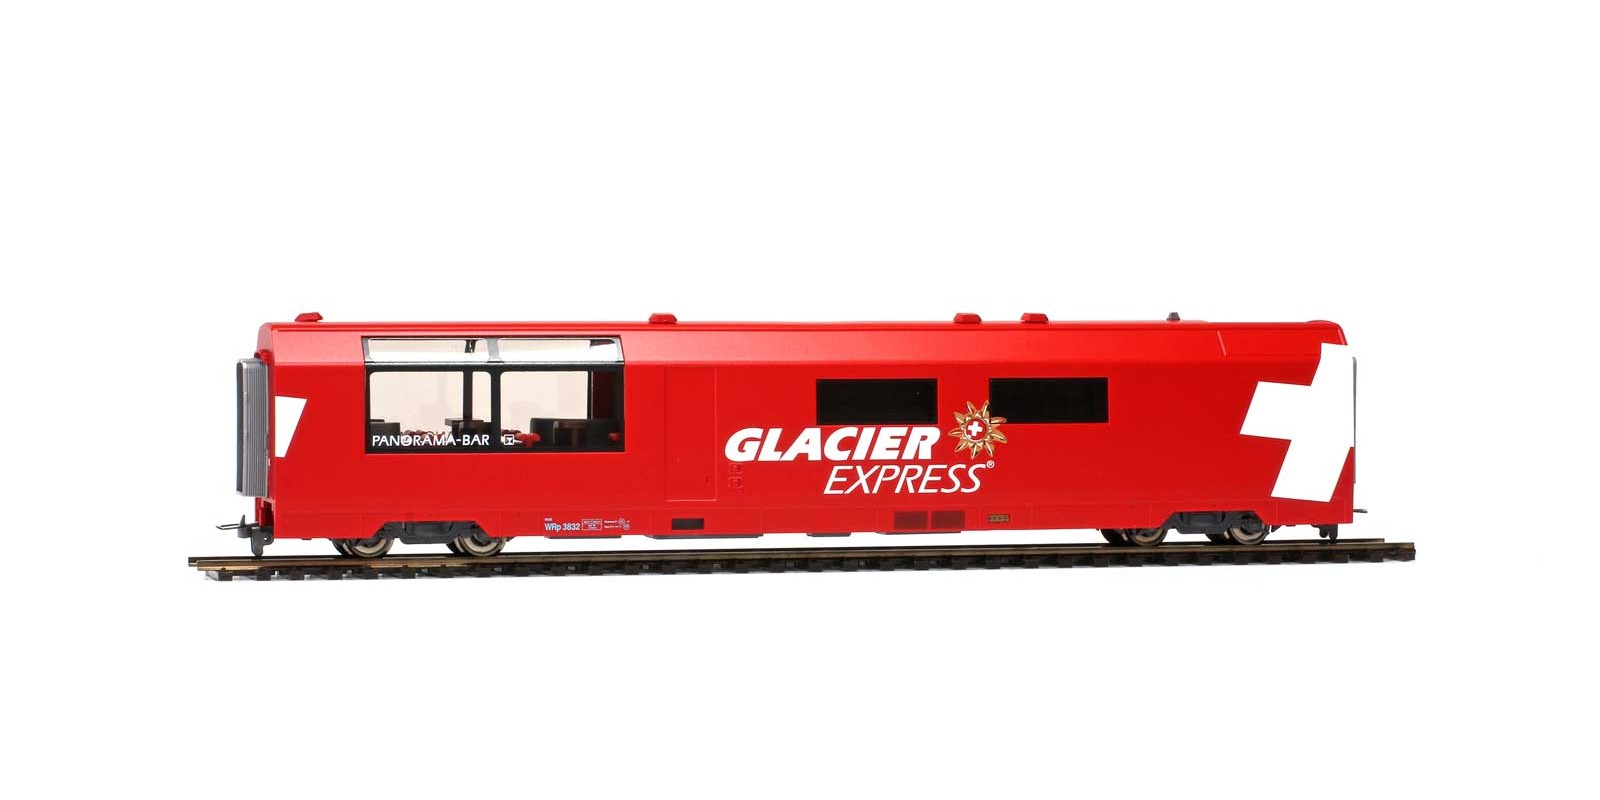 BM3689132 RhB WRp 3832 "Glacier-Express" Servicewagen für H0